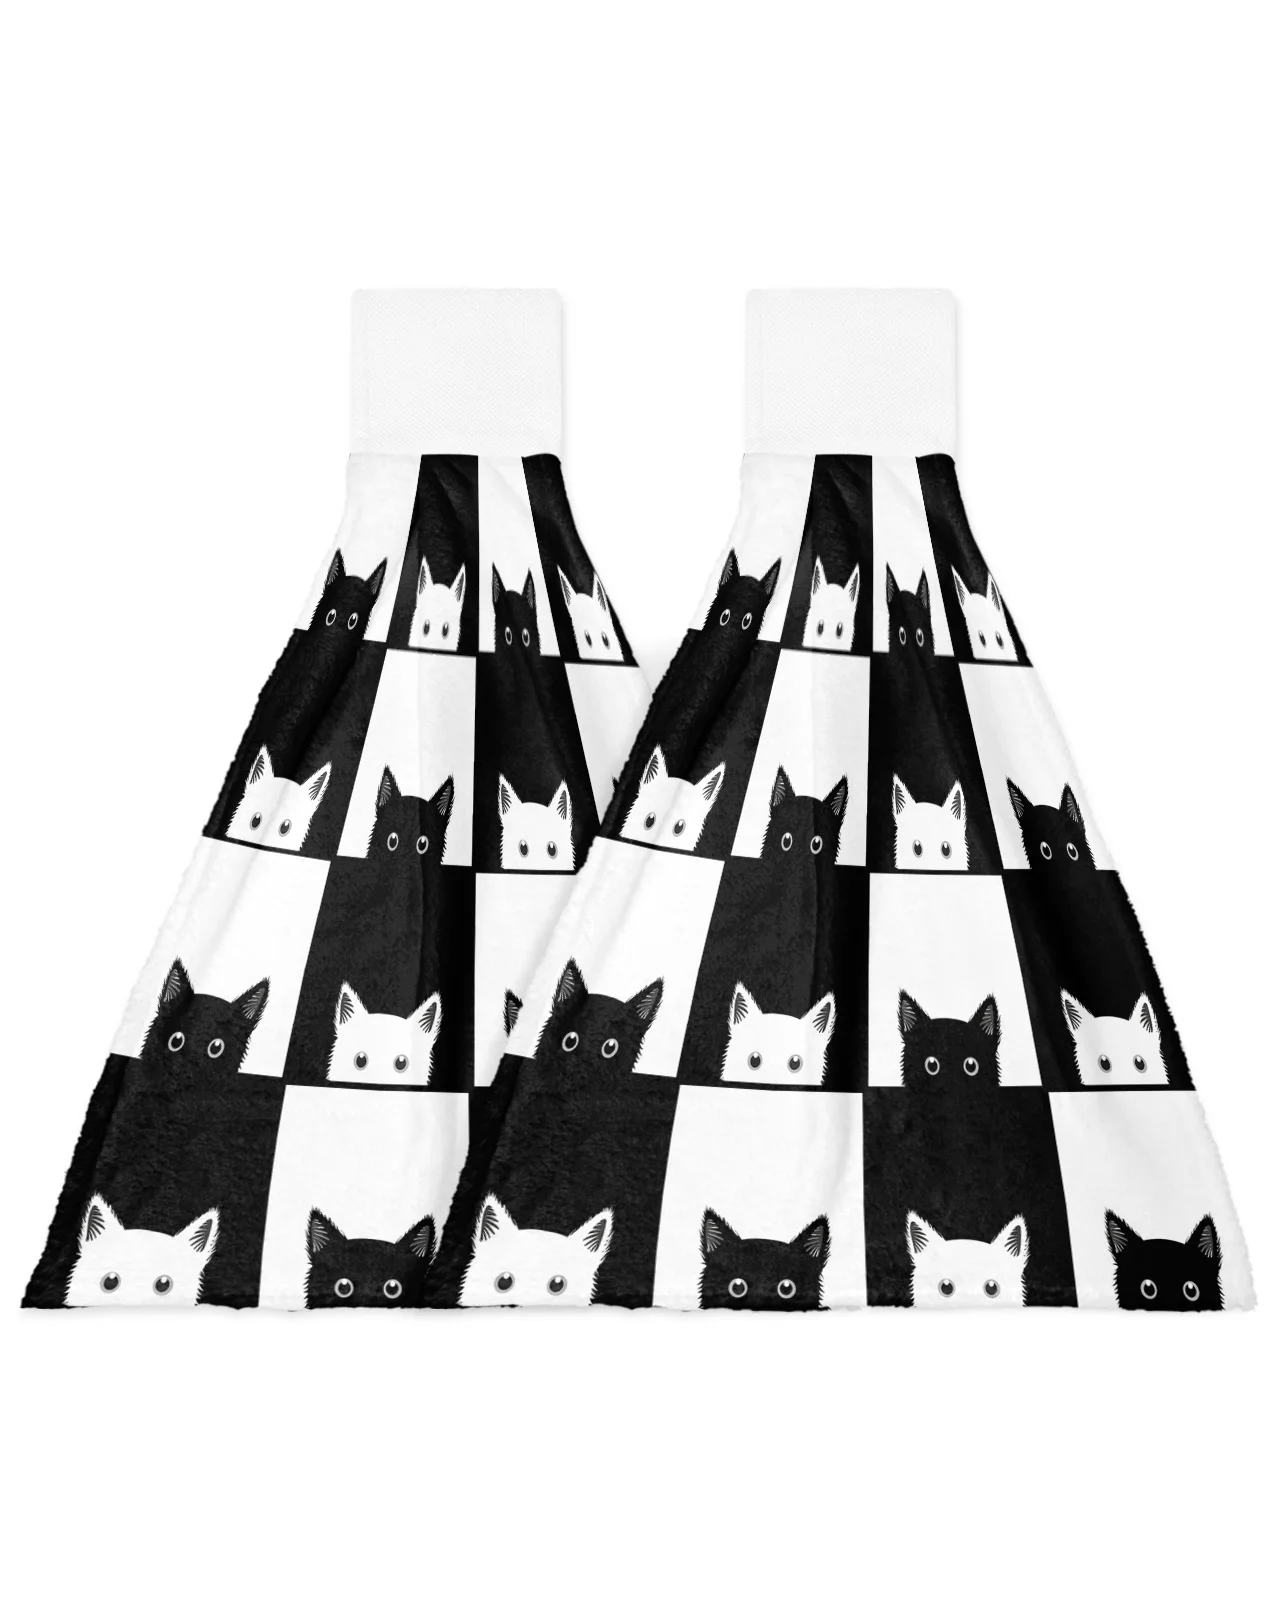 Geometic Black White Plaid Cat Пользовательское полотенце для рук Впитывающие Подвесные полотенца Домашняя Кухня Салфетки для мытья посуды Ванная Комната Салфетка для ванны 1